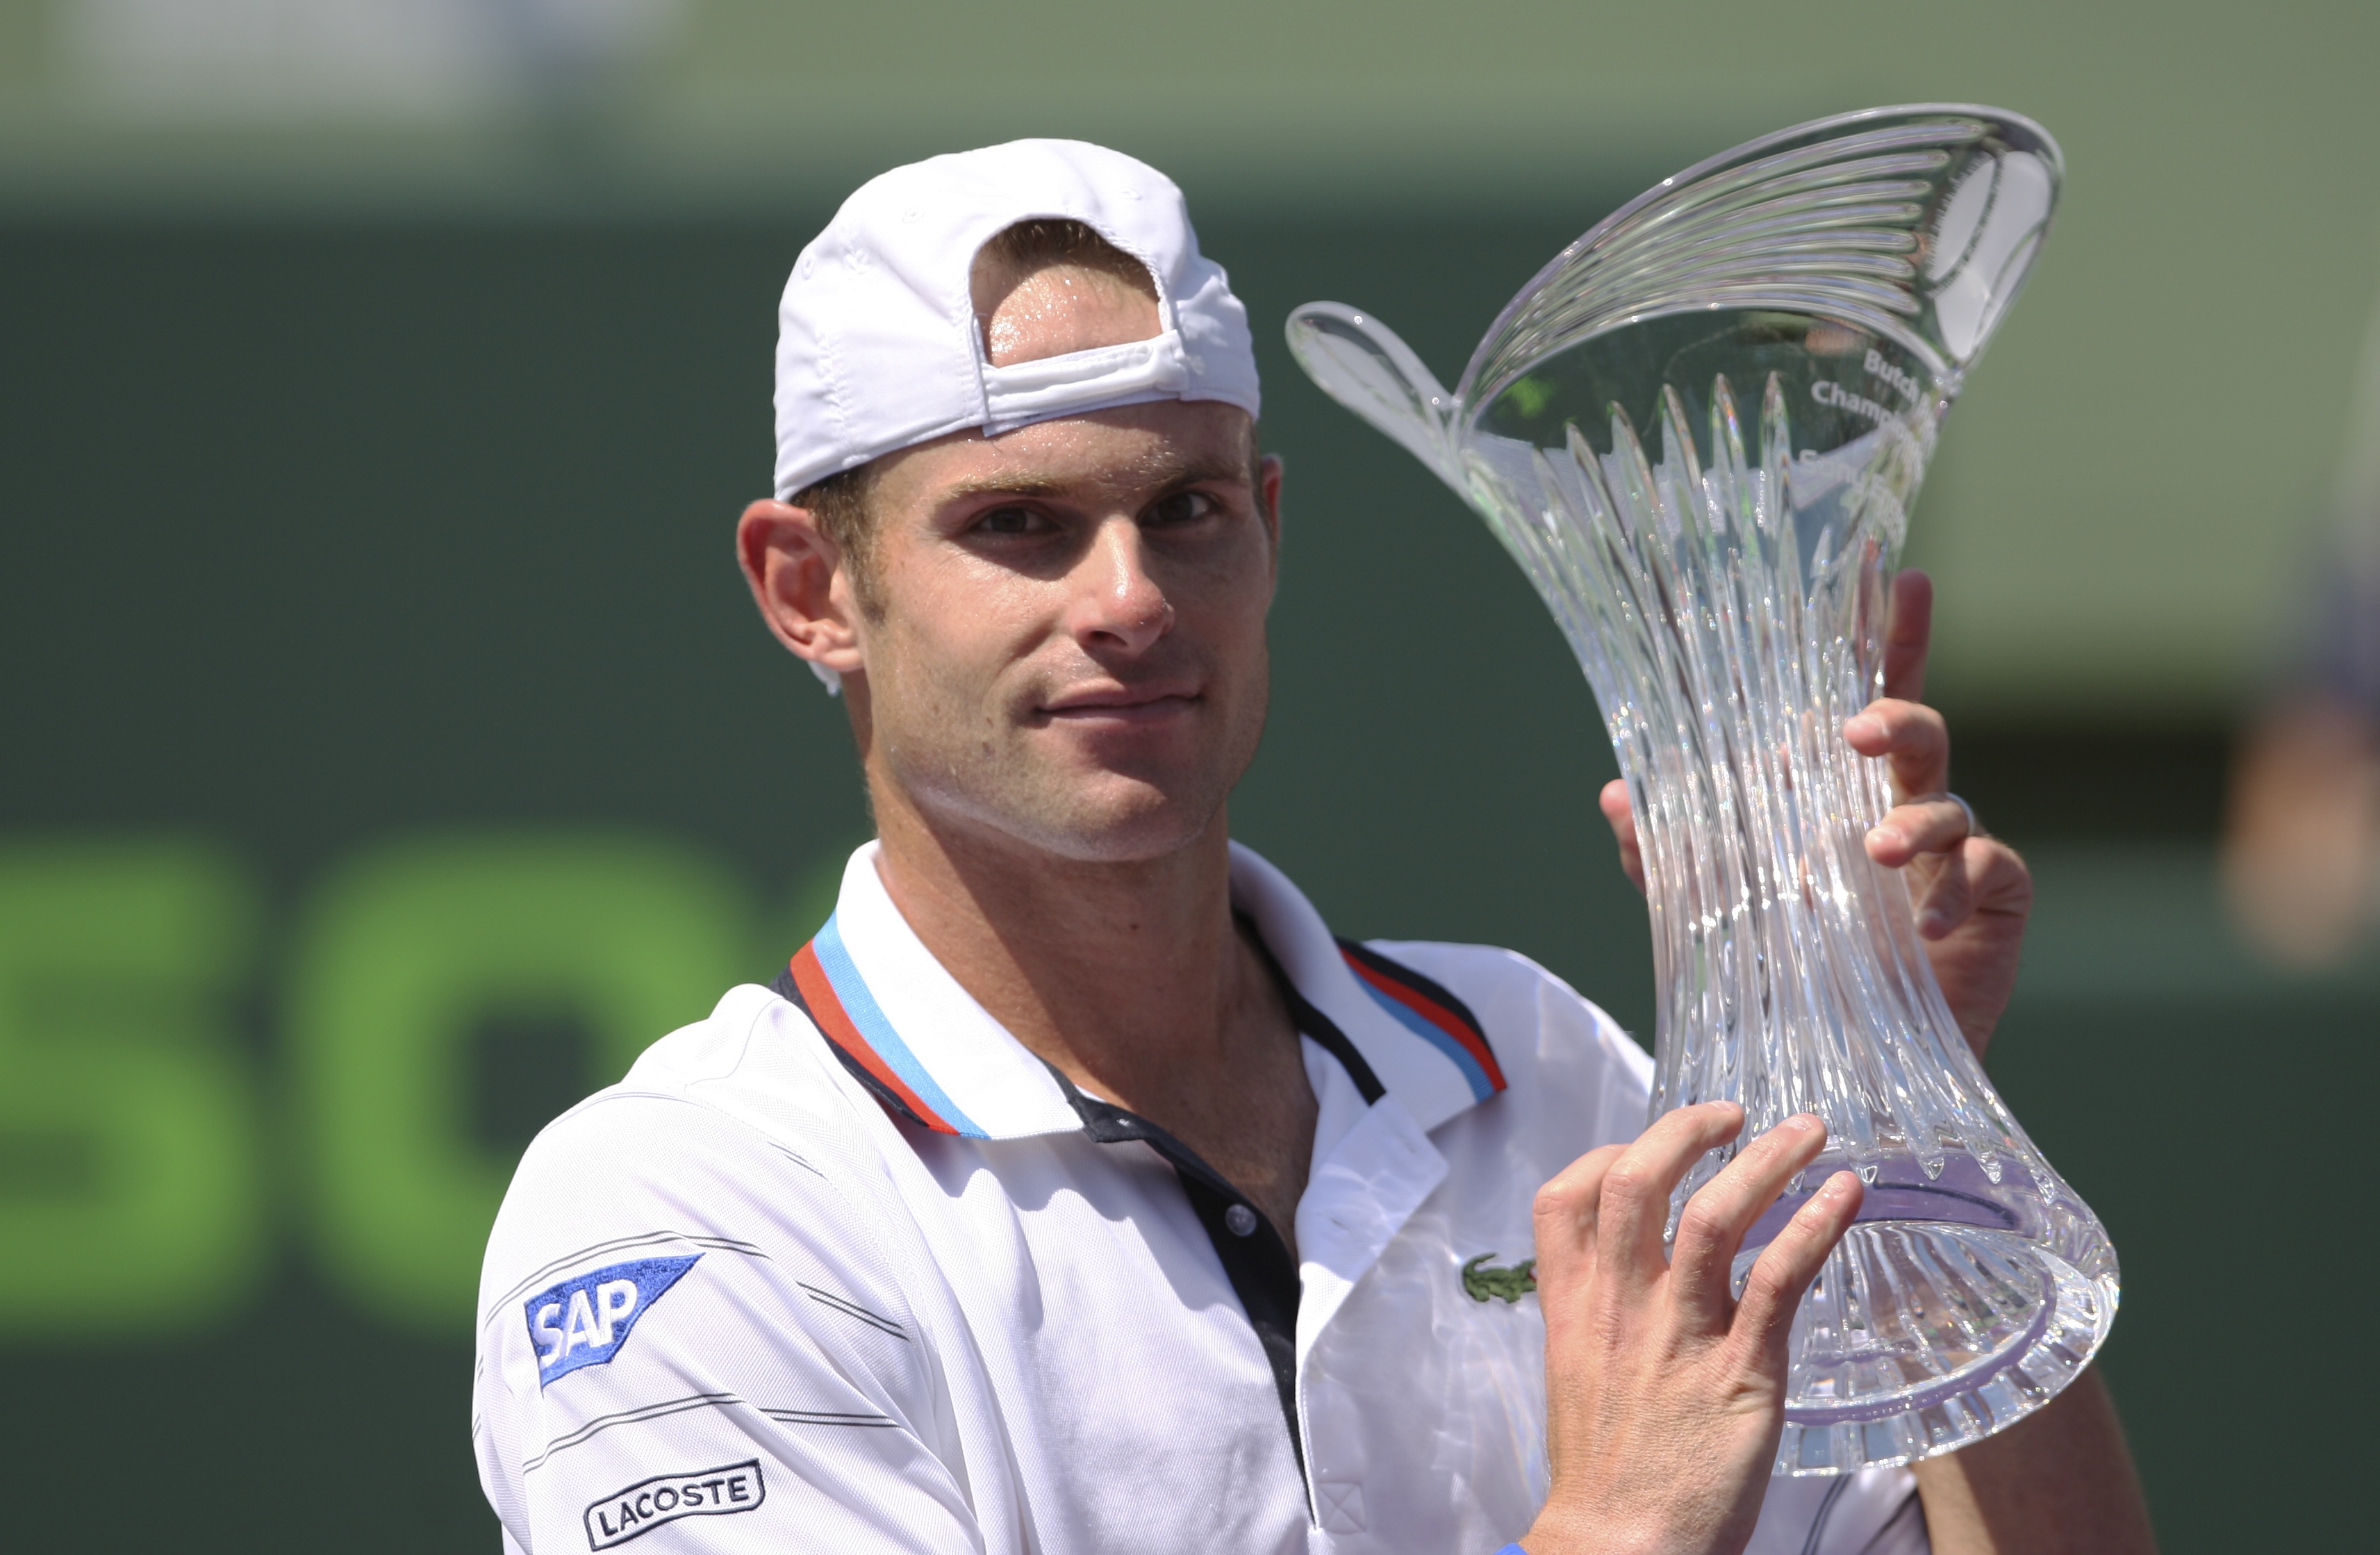 Tennis, Andy Roddick, ATP, Tomas Berdych, Miami Mastersturnering